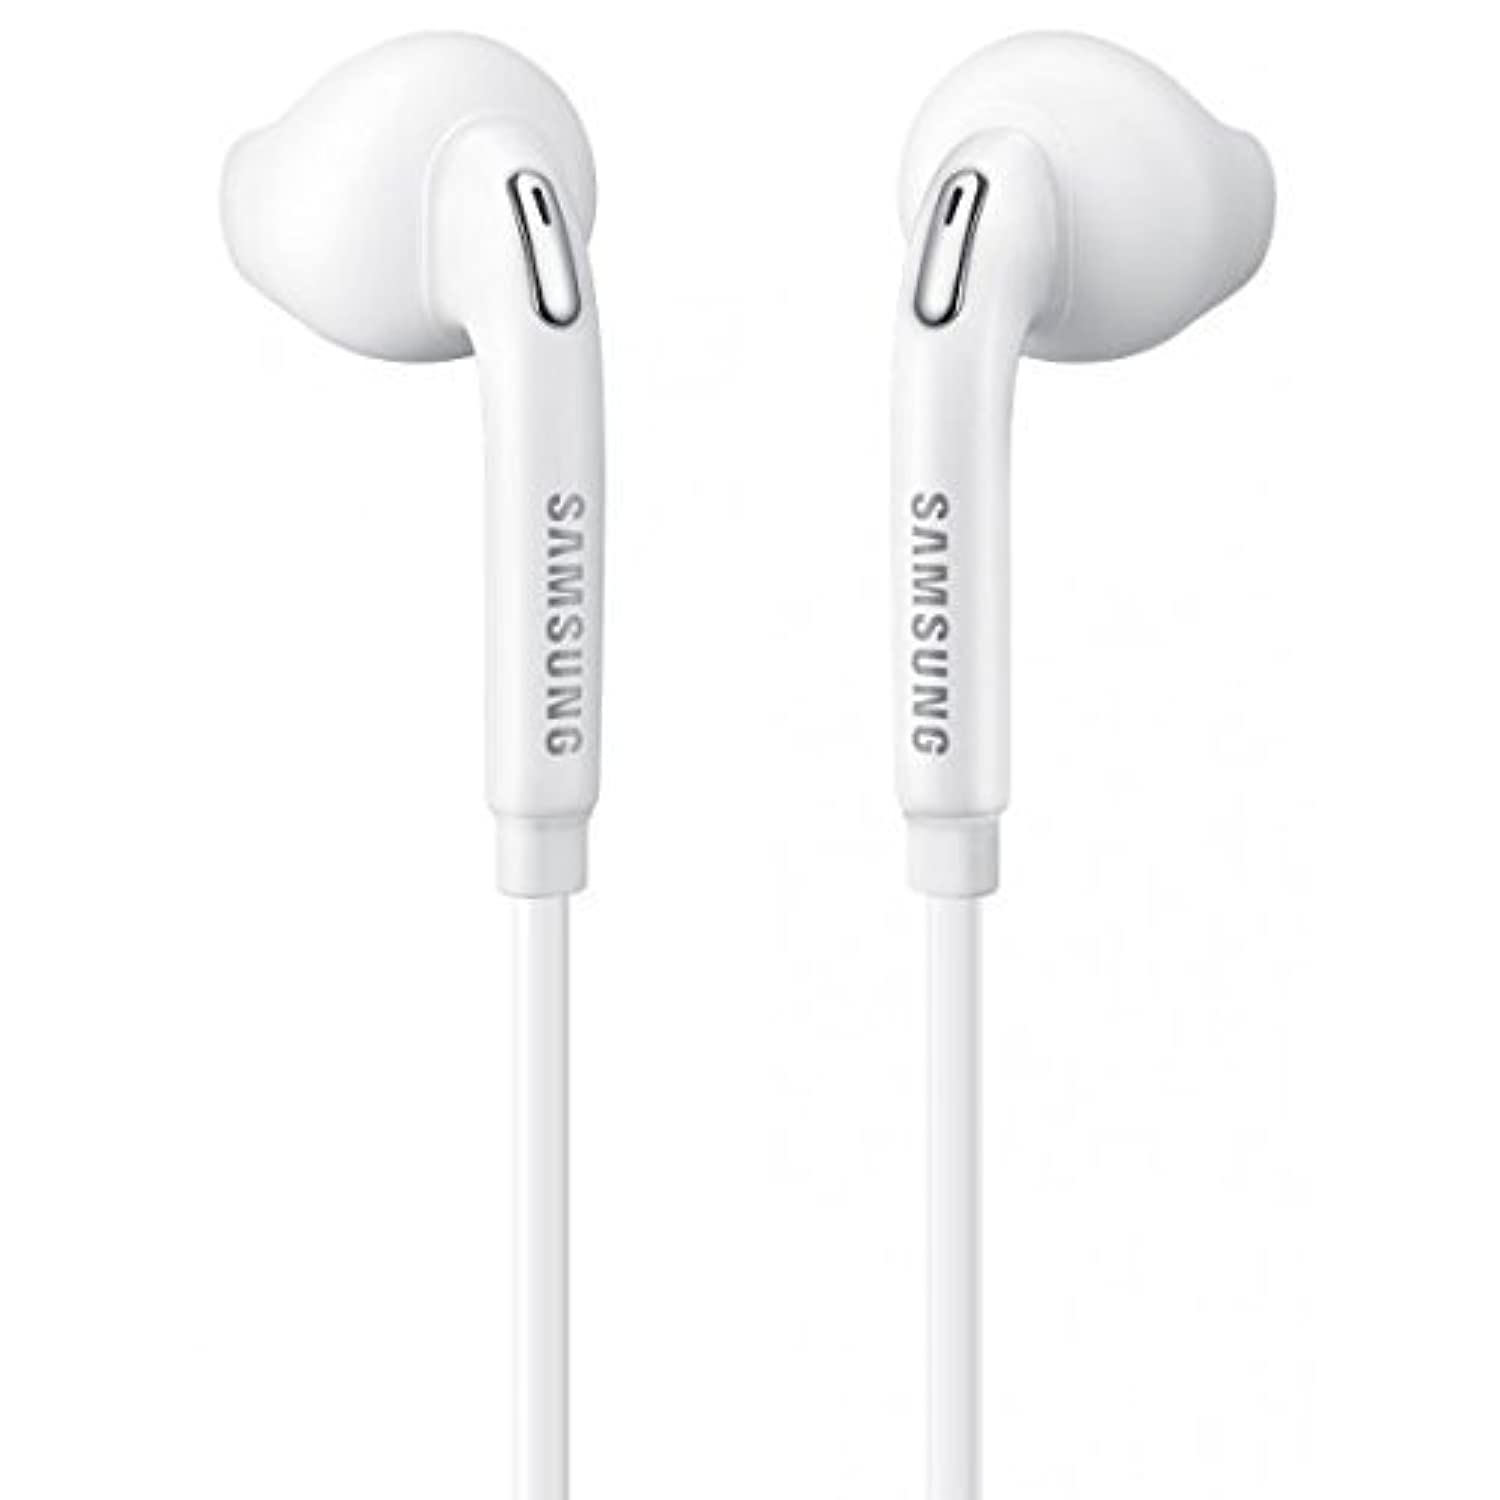 Samsung Eo-EG920Bw Blanc Casque/Mains libres/Casque/Écouteurs avec contrôle du volume pour téléphones Galaxy (emballage non commercial - Emballage en vrac)